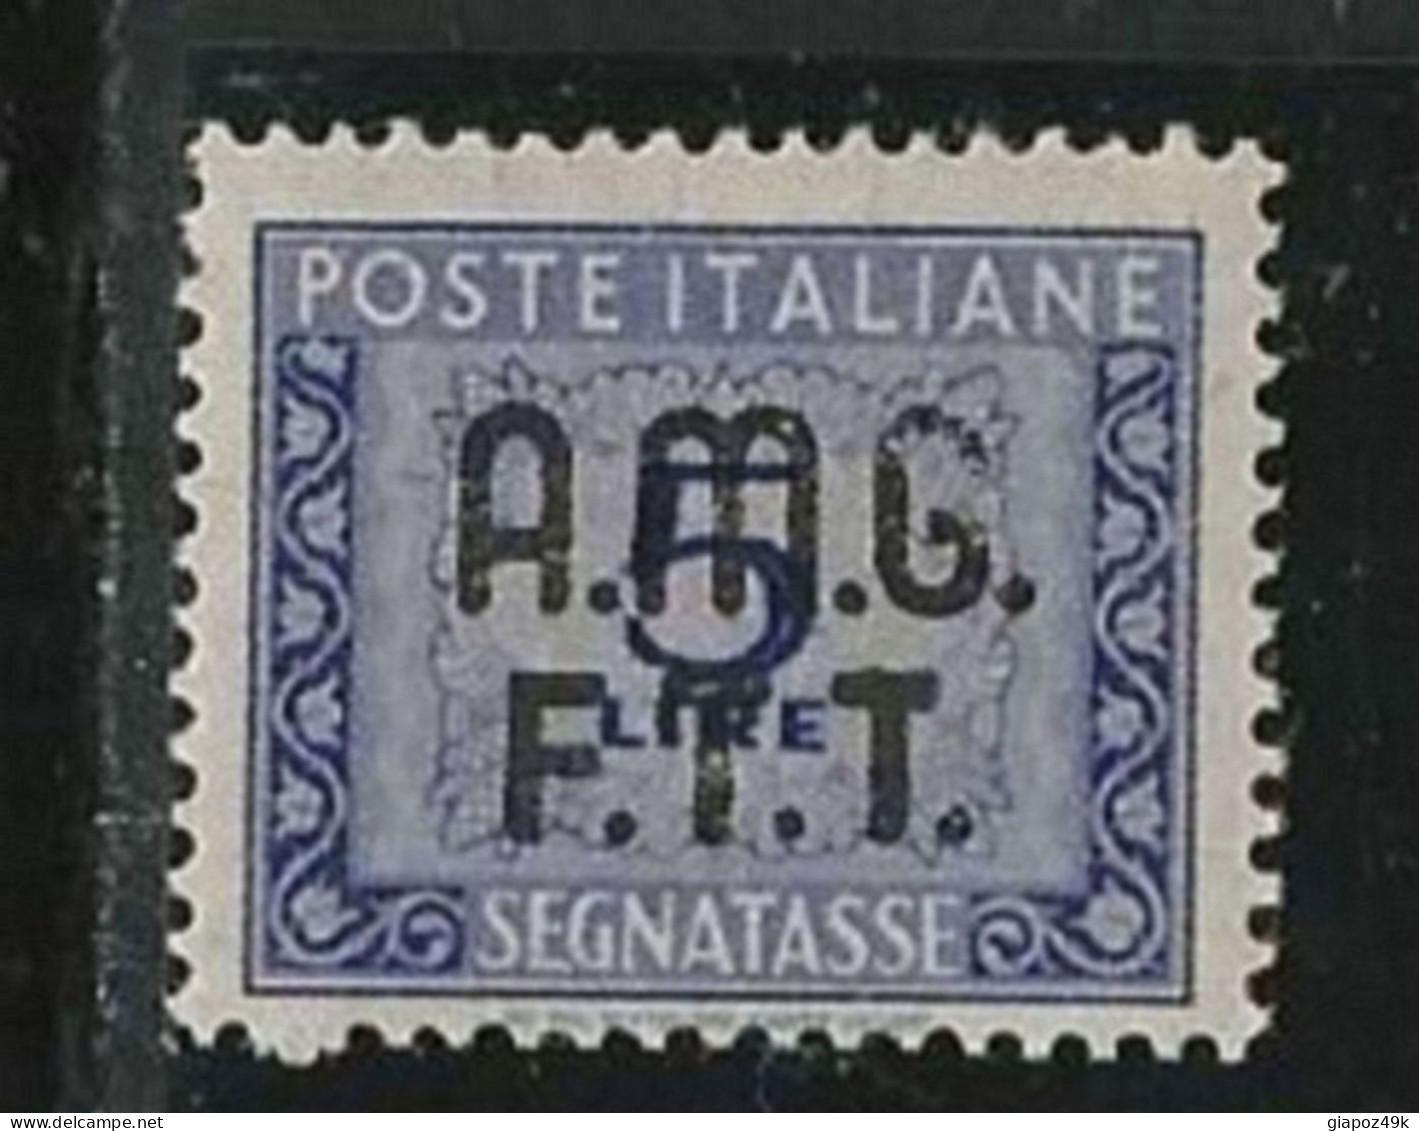 ● ITALIA TRIESTE 1947 /49 ֍ SEGNATASSE ֍ N. 9 Nuovo ** ● Fil. Ruota ● Cat. 320,00 € ● Lotto N. 1890 ● - Segnatasse